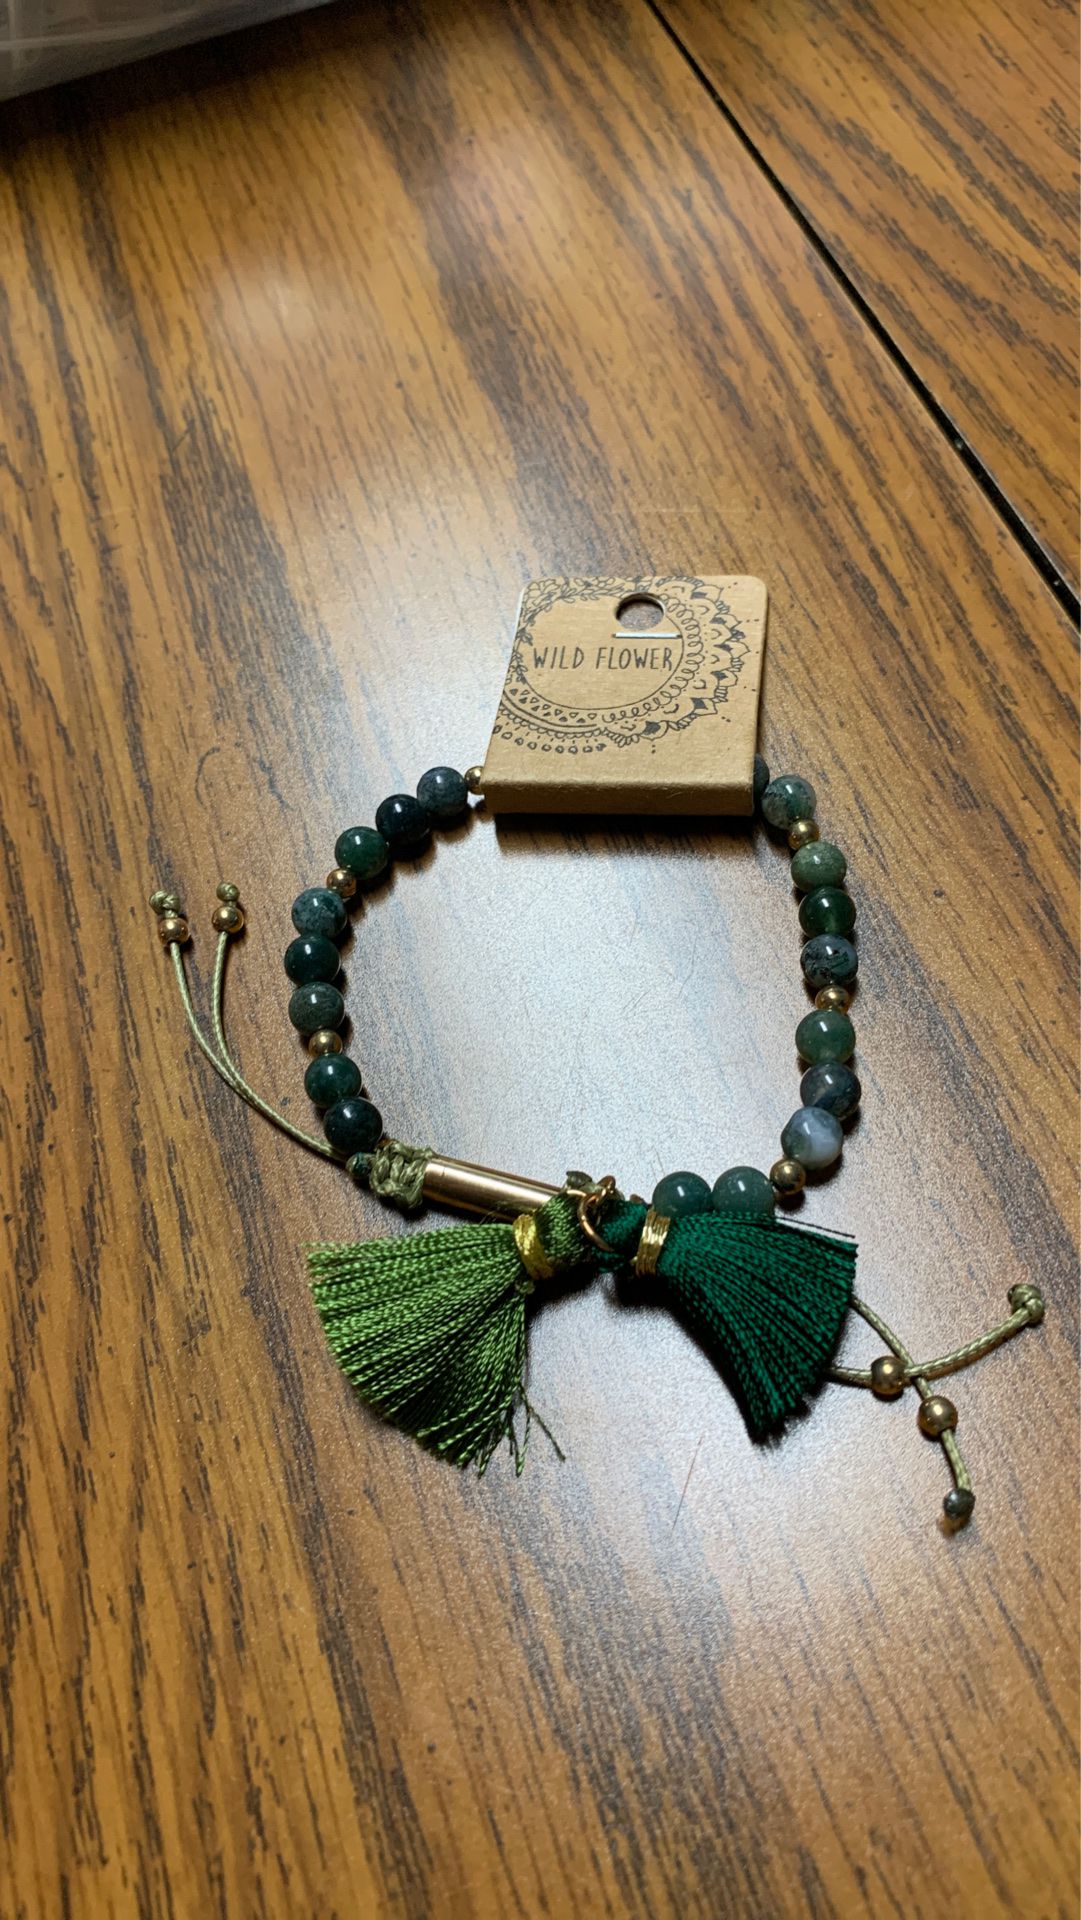 Brand new wild flower green bracelet